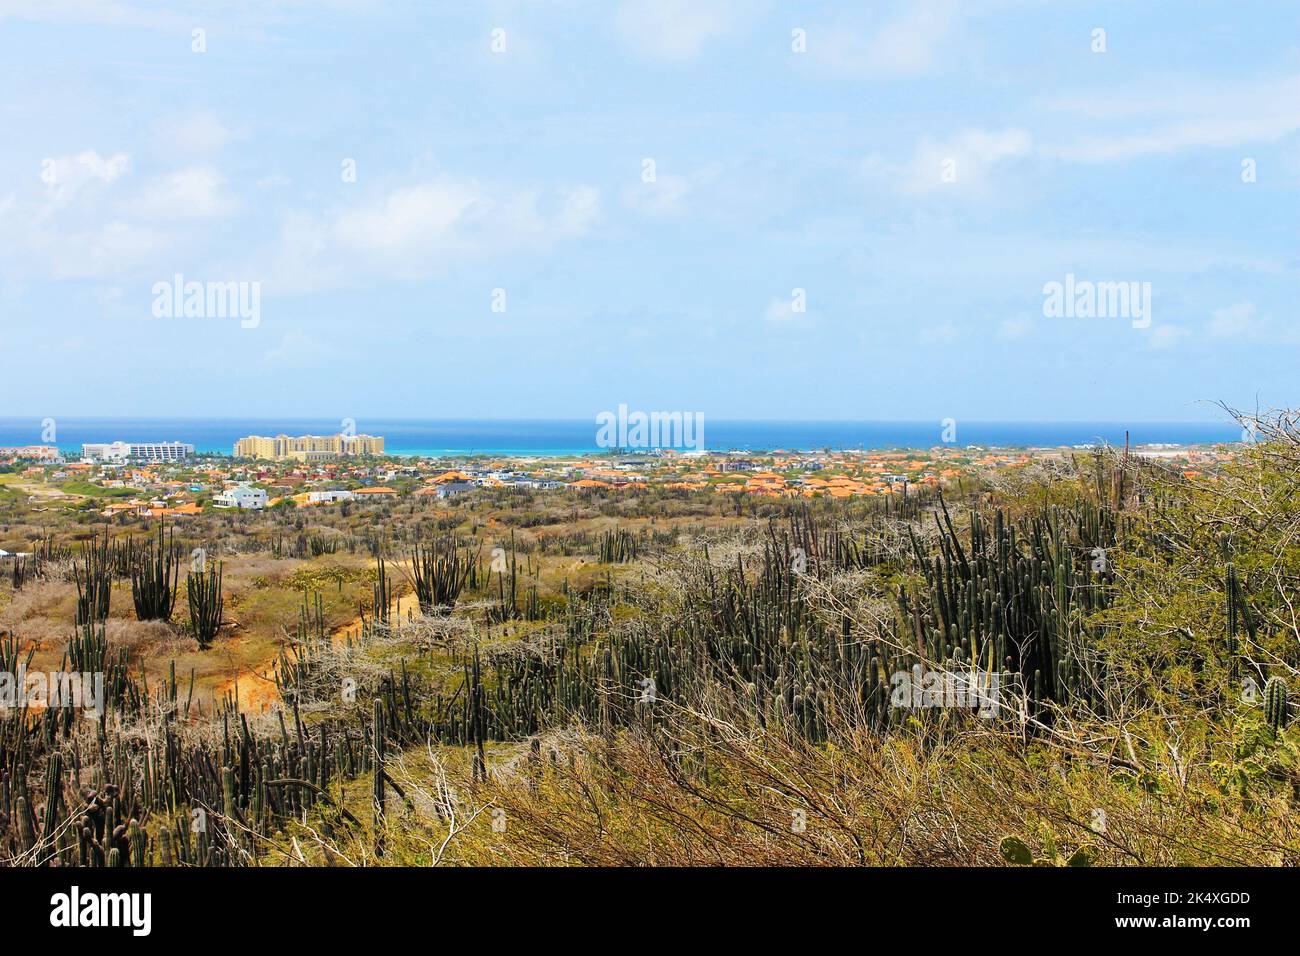 Si affaccia sull'isola di Aruba, dalla cima di una collina. Foto Stock